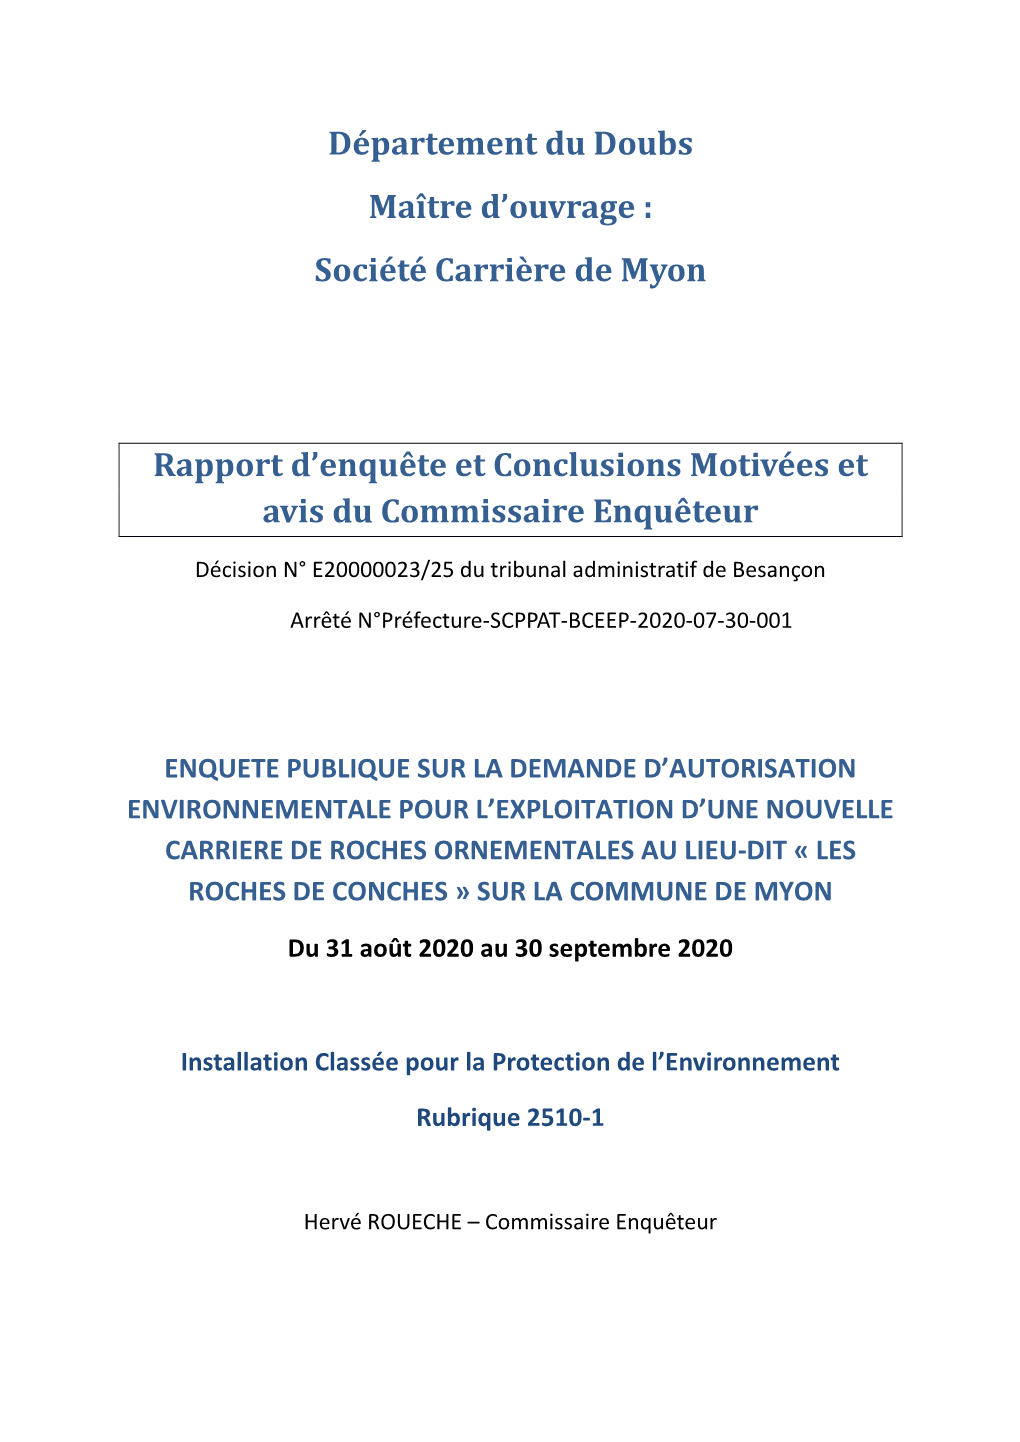 Département Du Doubs Maître D'ouvrage : Société Carrière De Myon Rapport D'enquête Et Conclusions Motivées Et Avis D